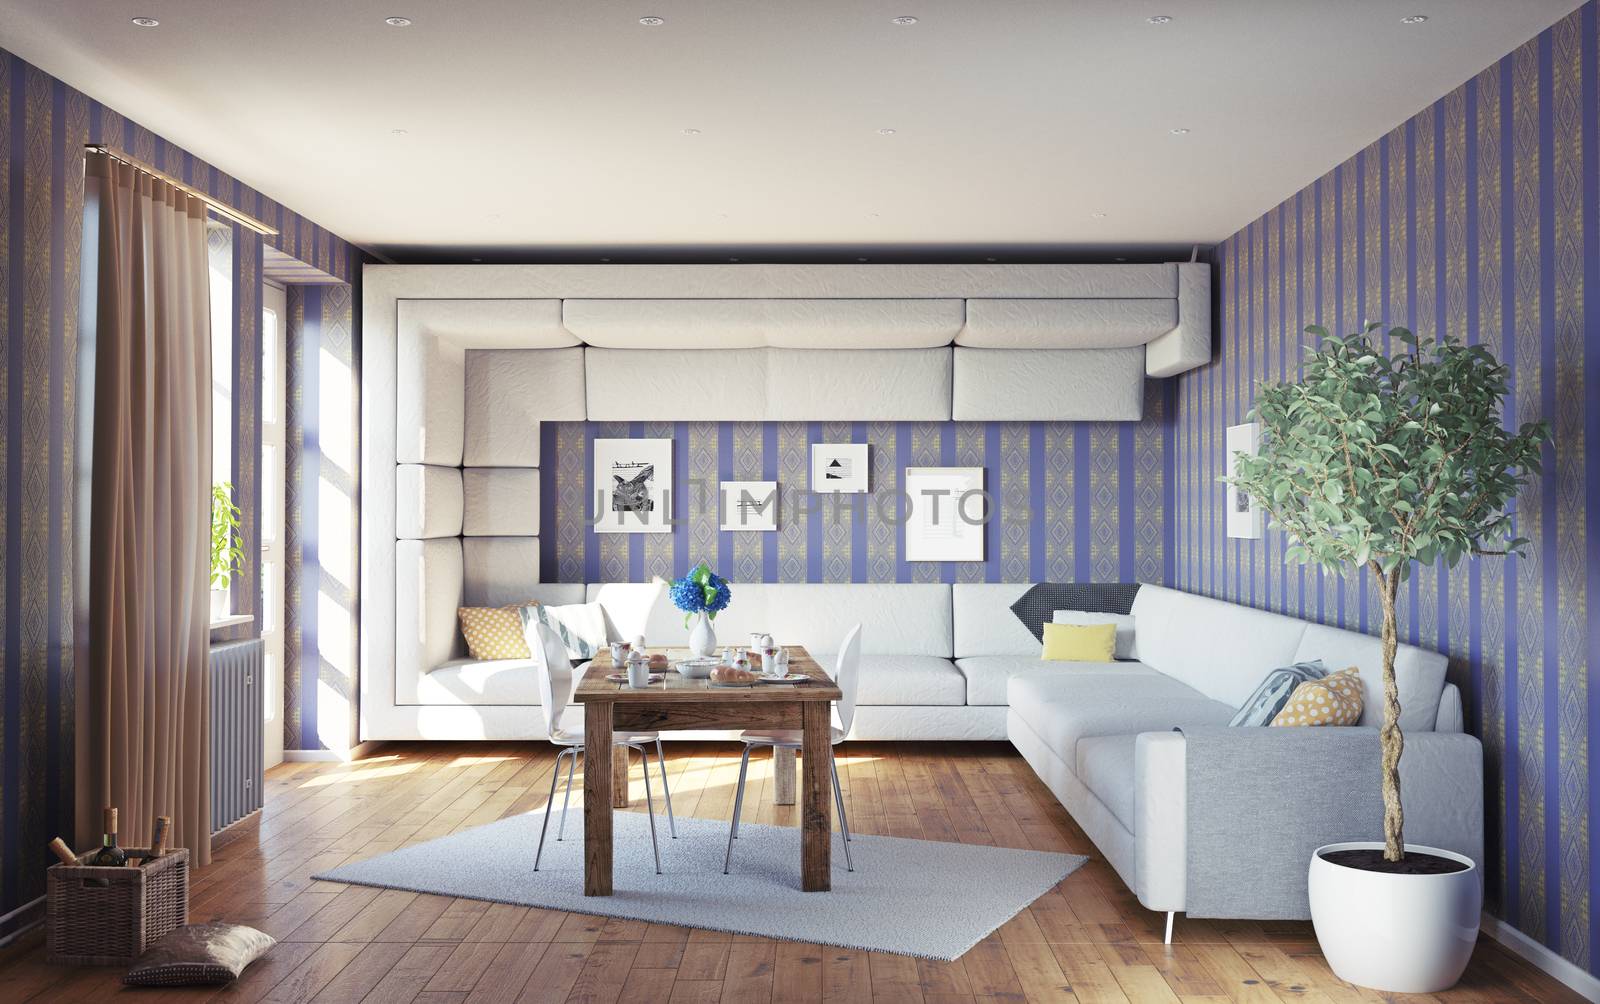 super sofa concept. living room interior. 3d design idea